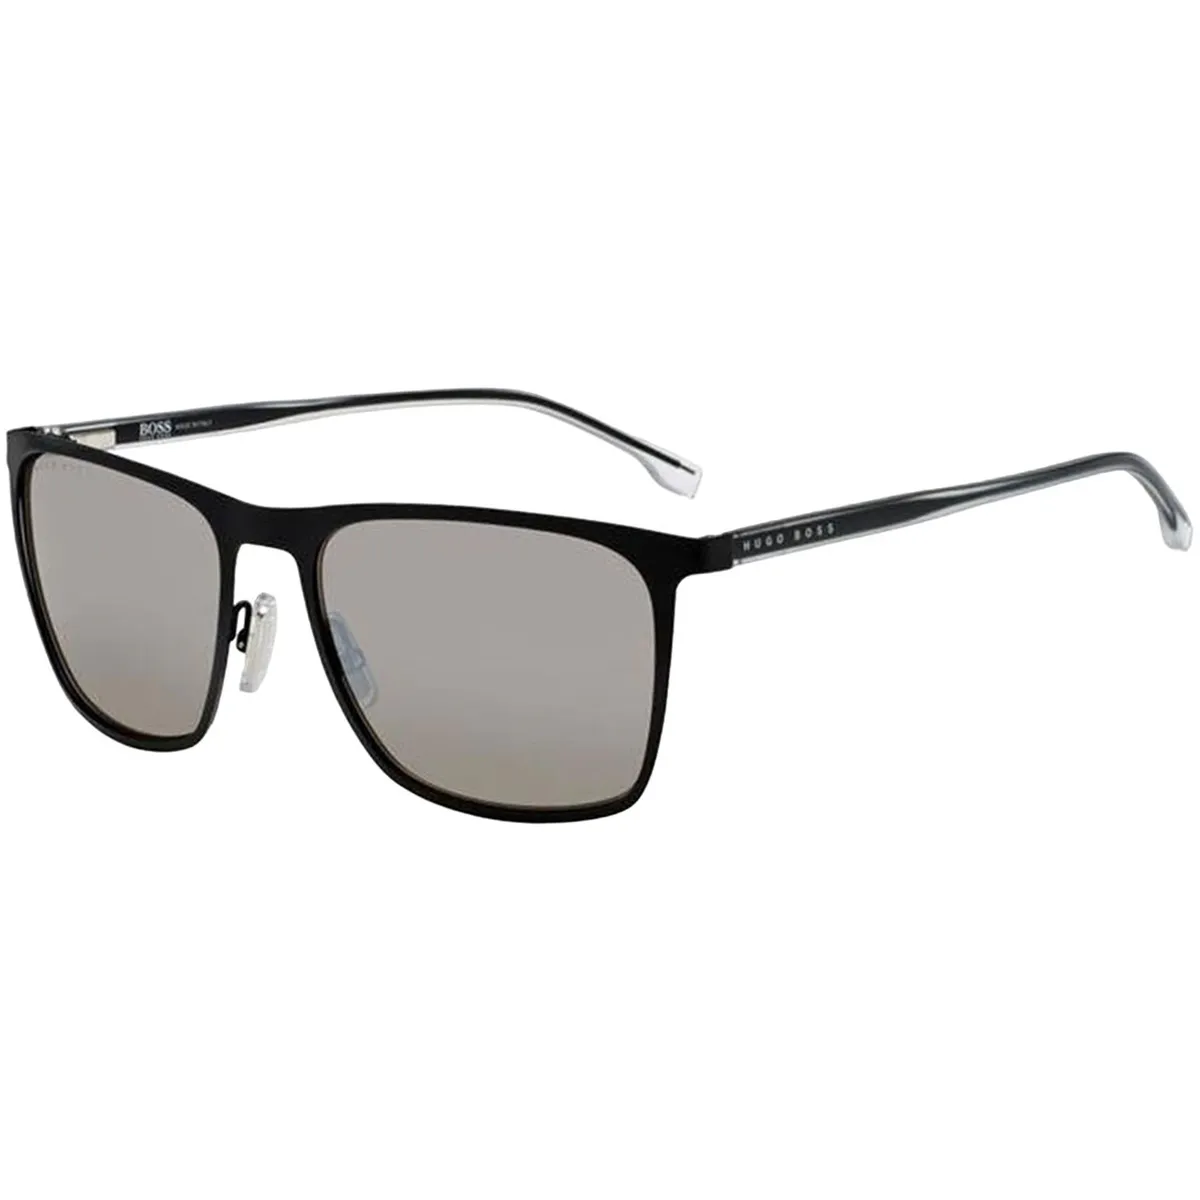 Hugo Boss Sunglasses Steel Rectangular Frame 1149/S/IT 0003 T4 | eBay